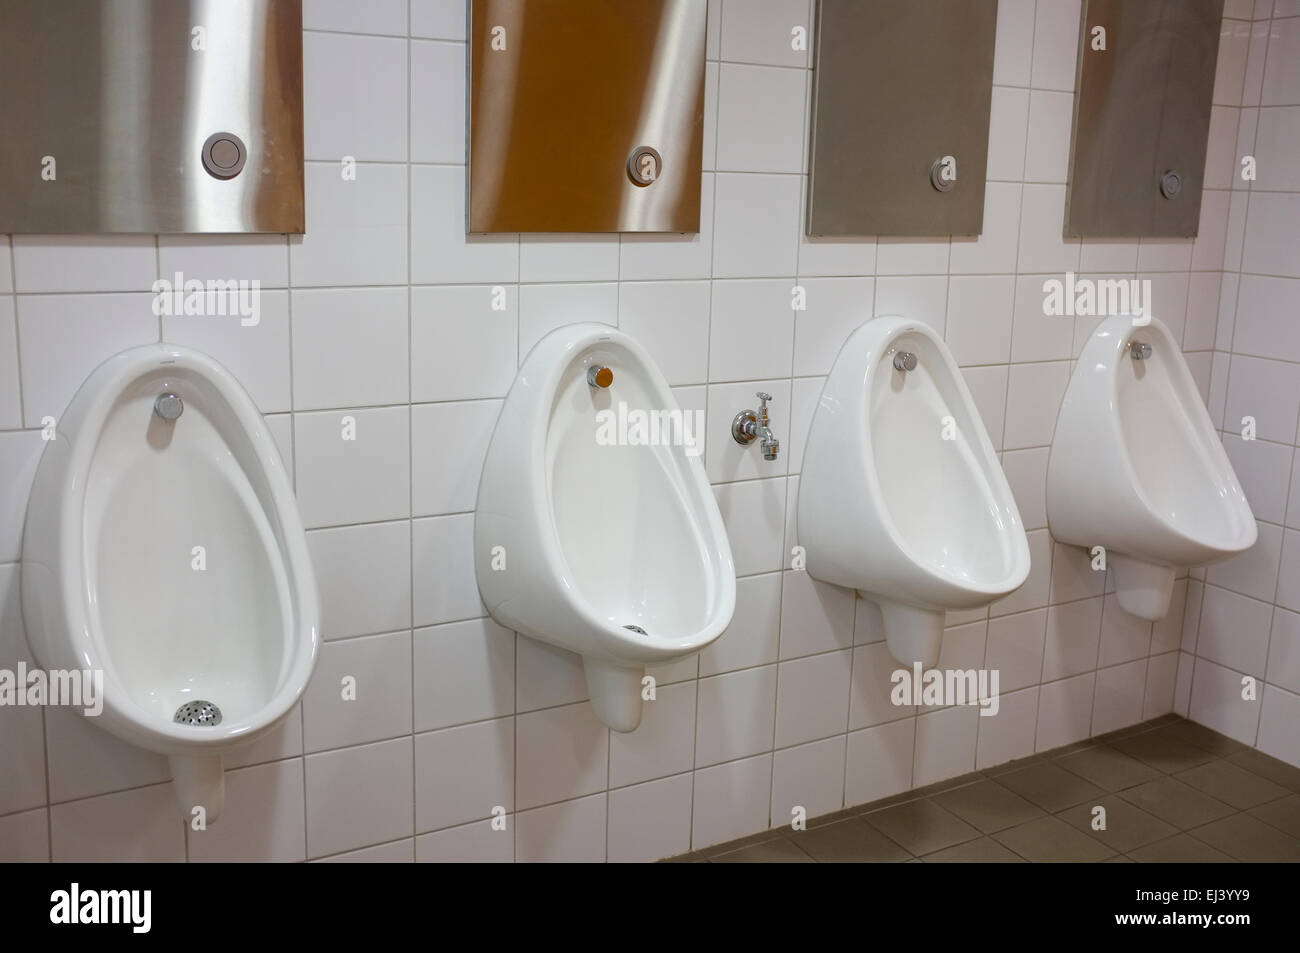 Línea de urinarios en la mens wc. Foto de stock